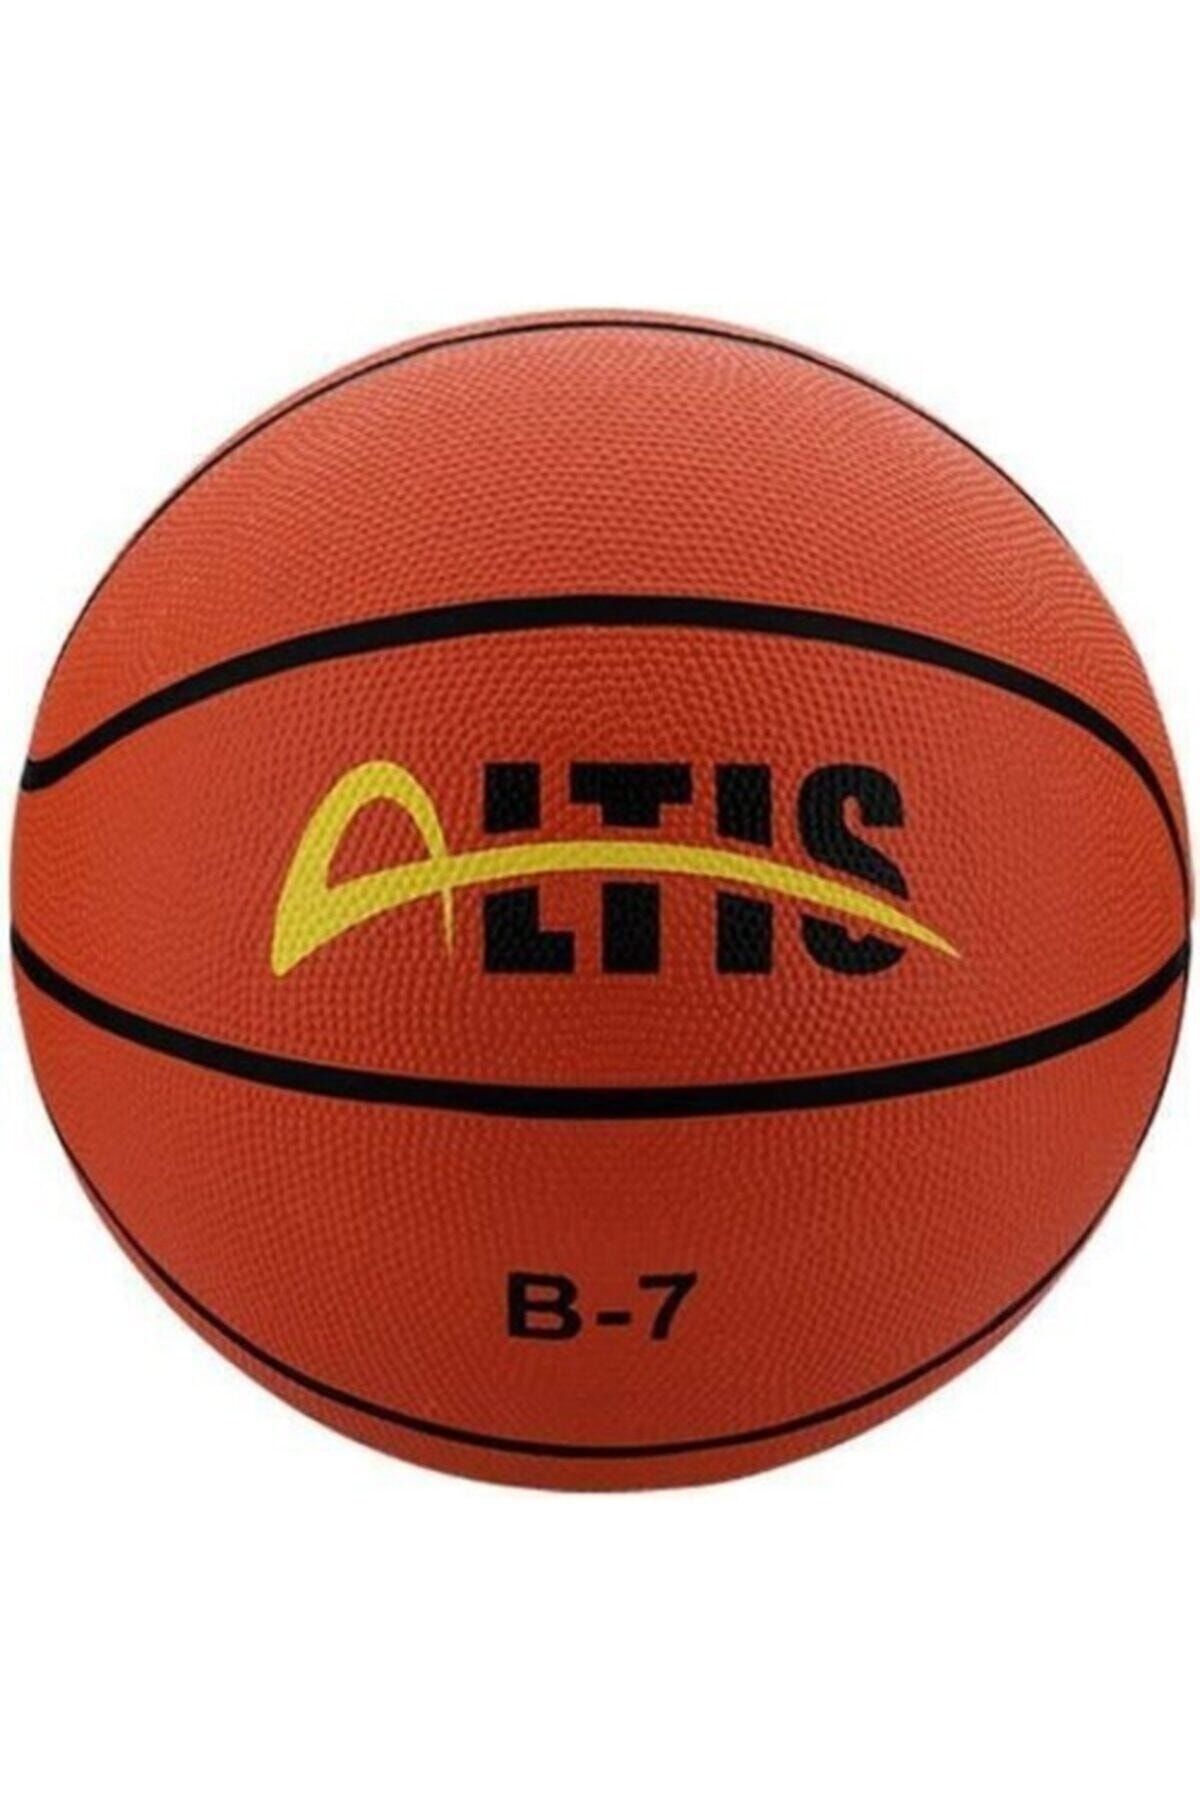 ALTIS B7 Basketbol Topu